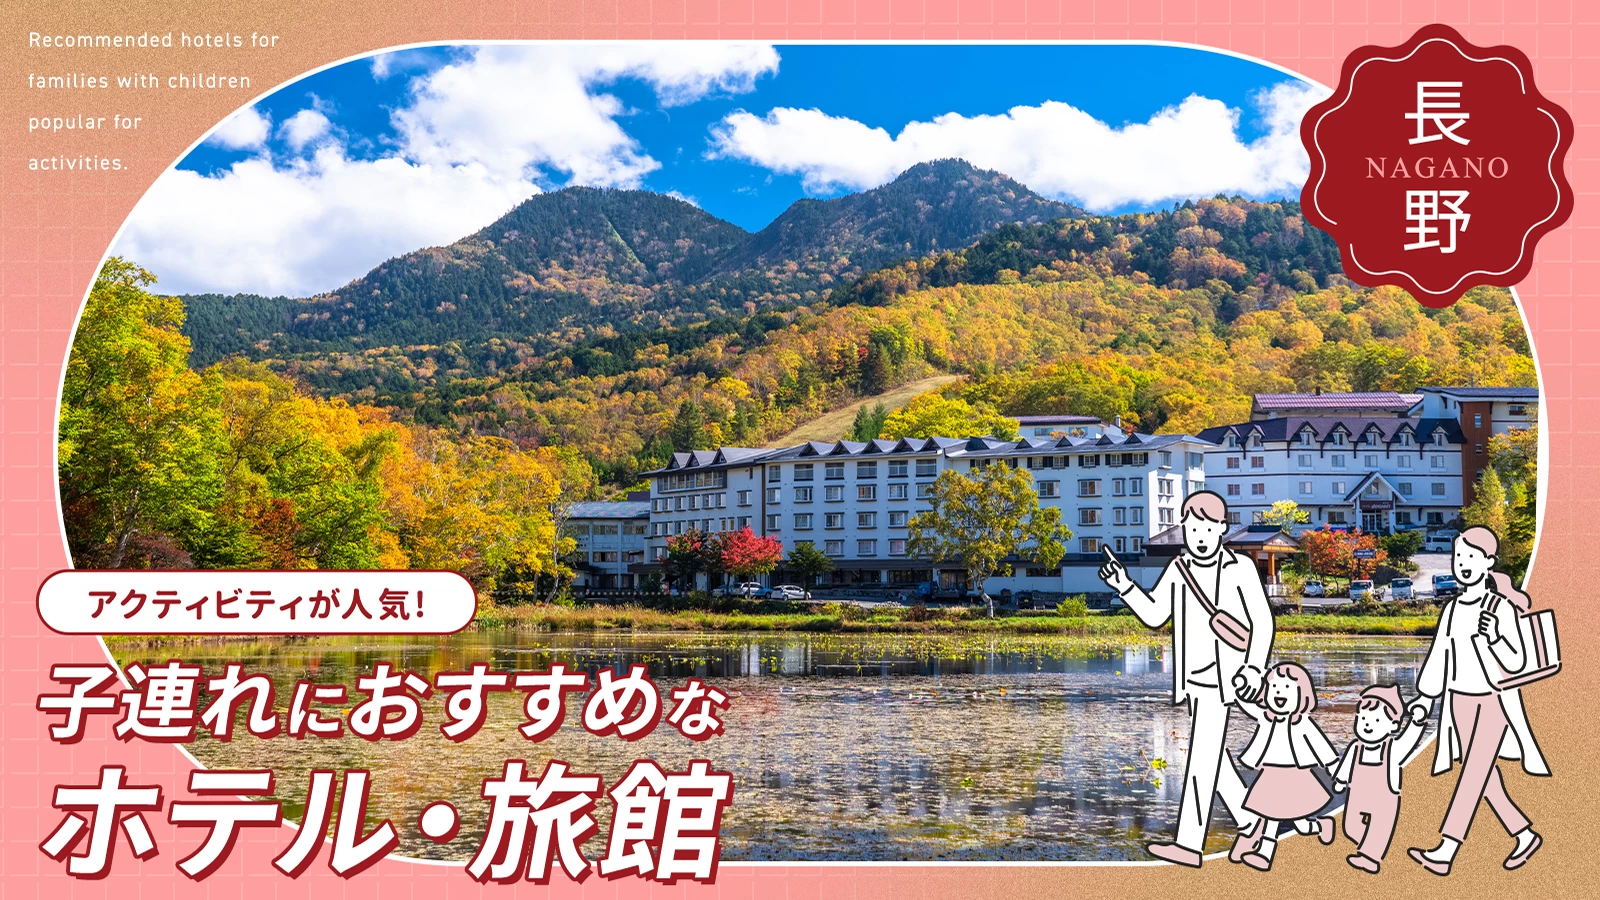 【長野】アクティビティが人気の子連れにおすすめなホテル・旅館8選